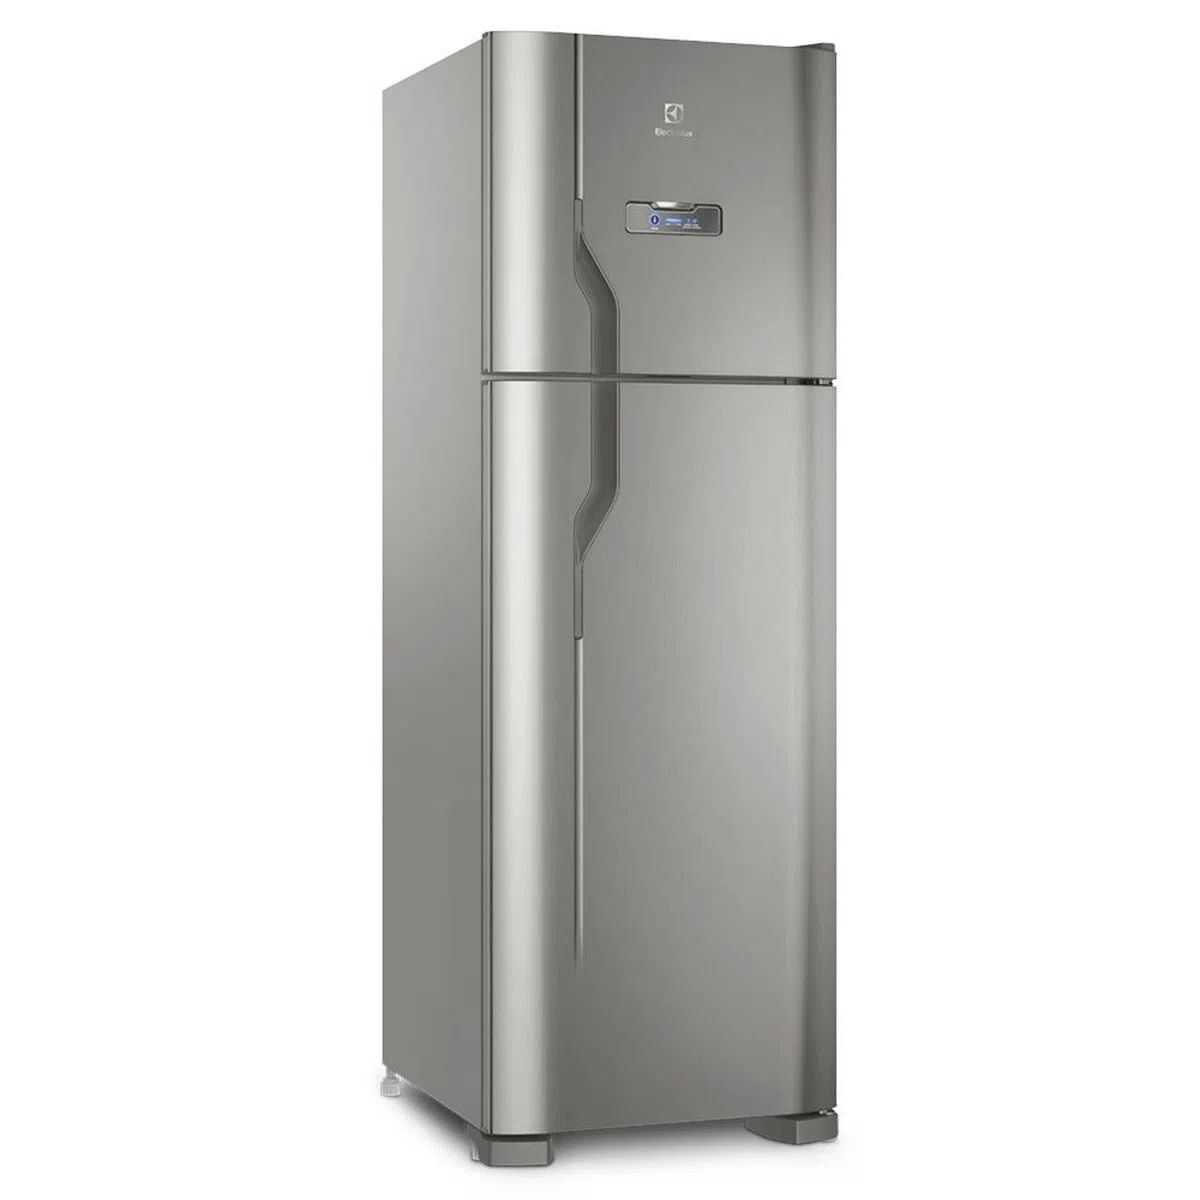 geladeira-electrolux-degelo-automatico-duplex-2-portas-dfx41-371-litros-inox-110v-1.jpg